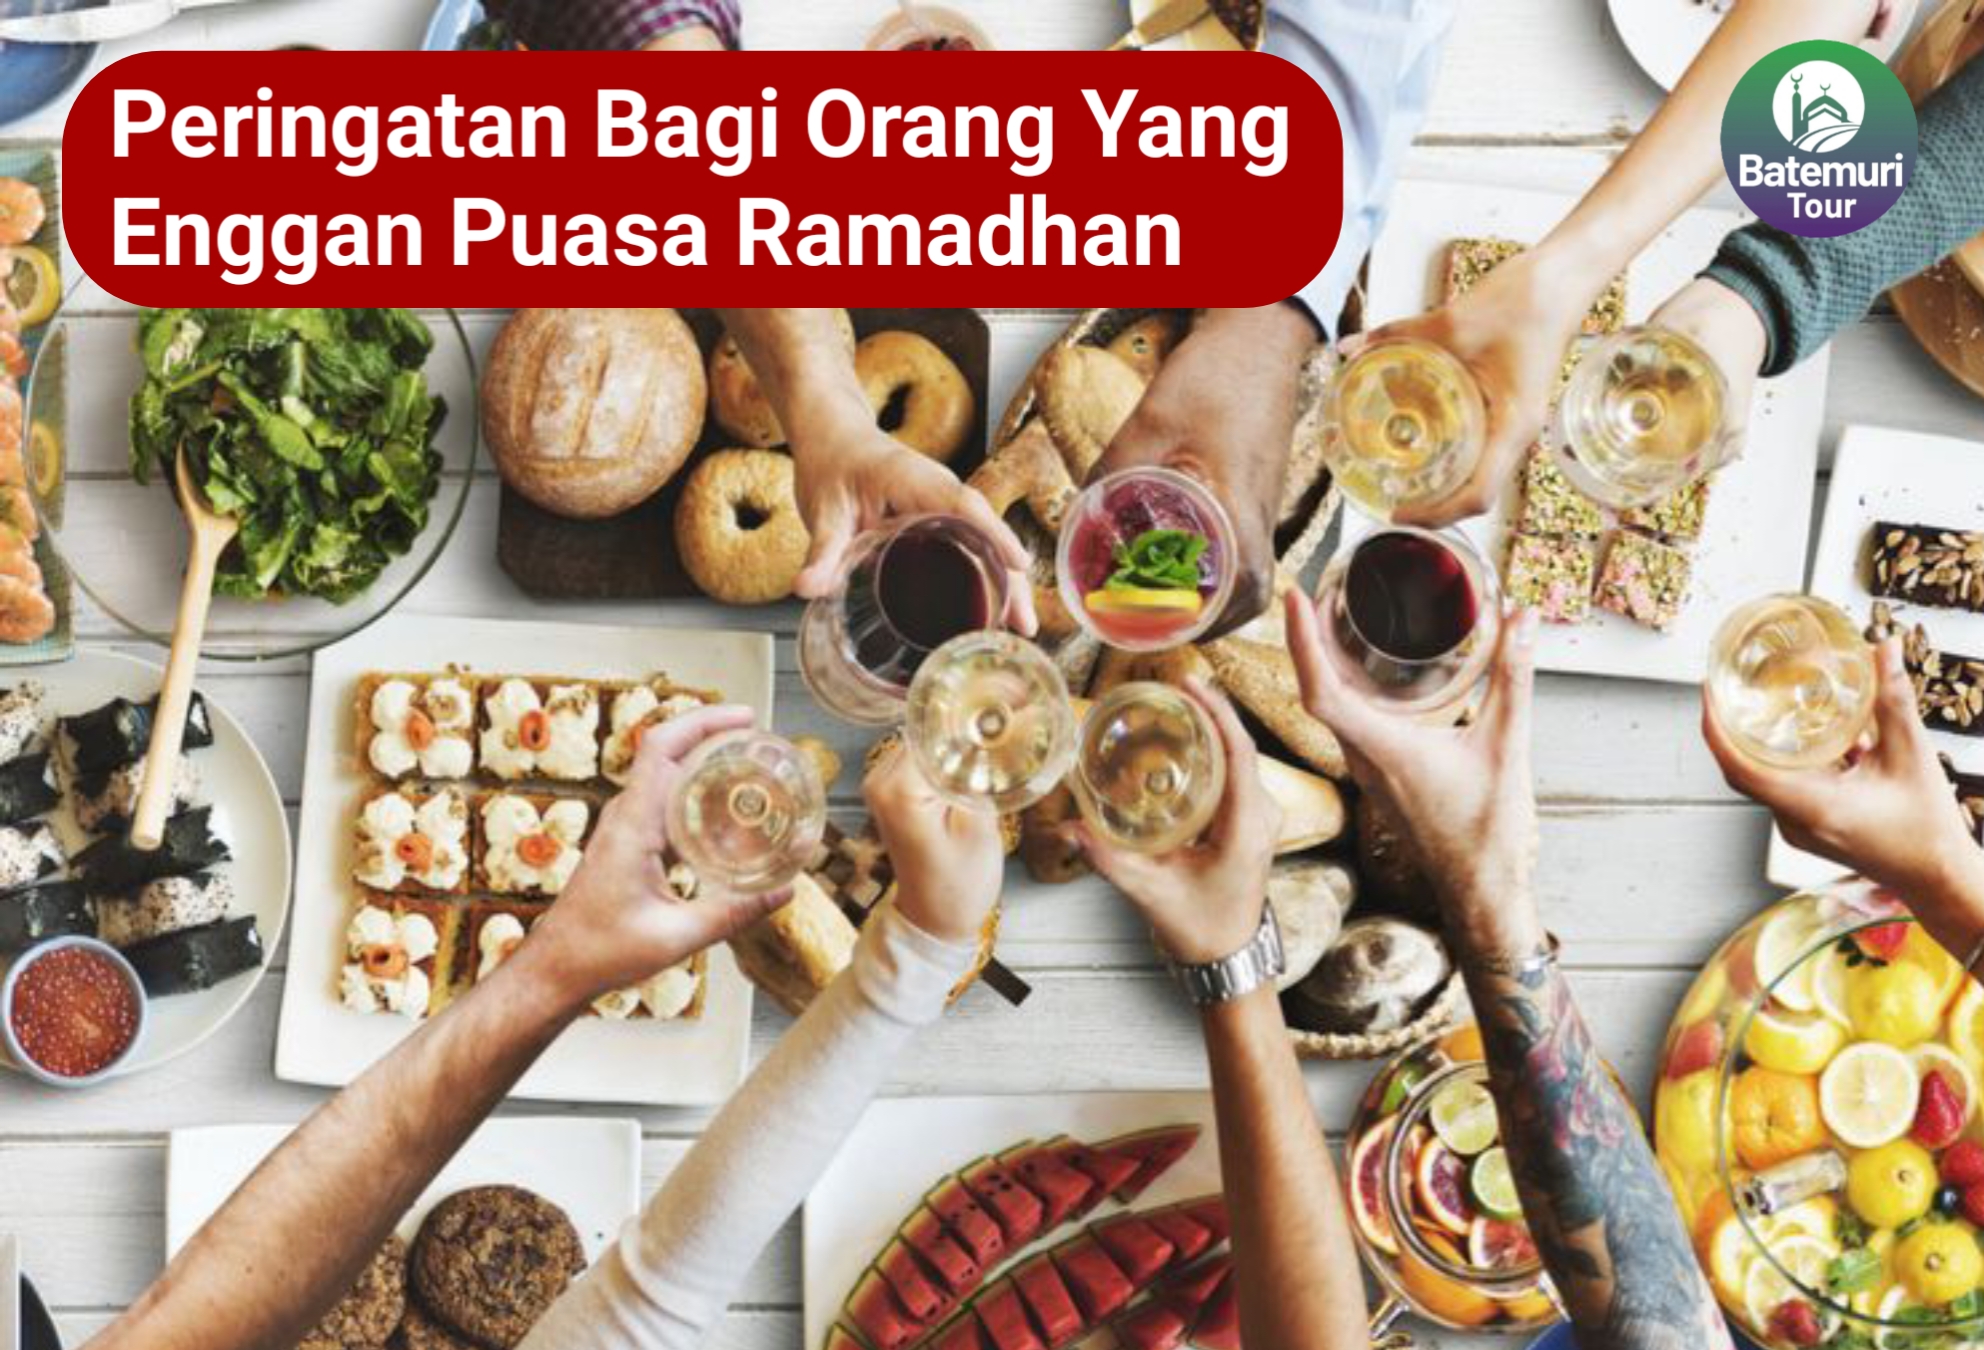 Peringatan Bagi Orang yang Enggan Puasa Ramadhan